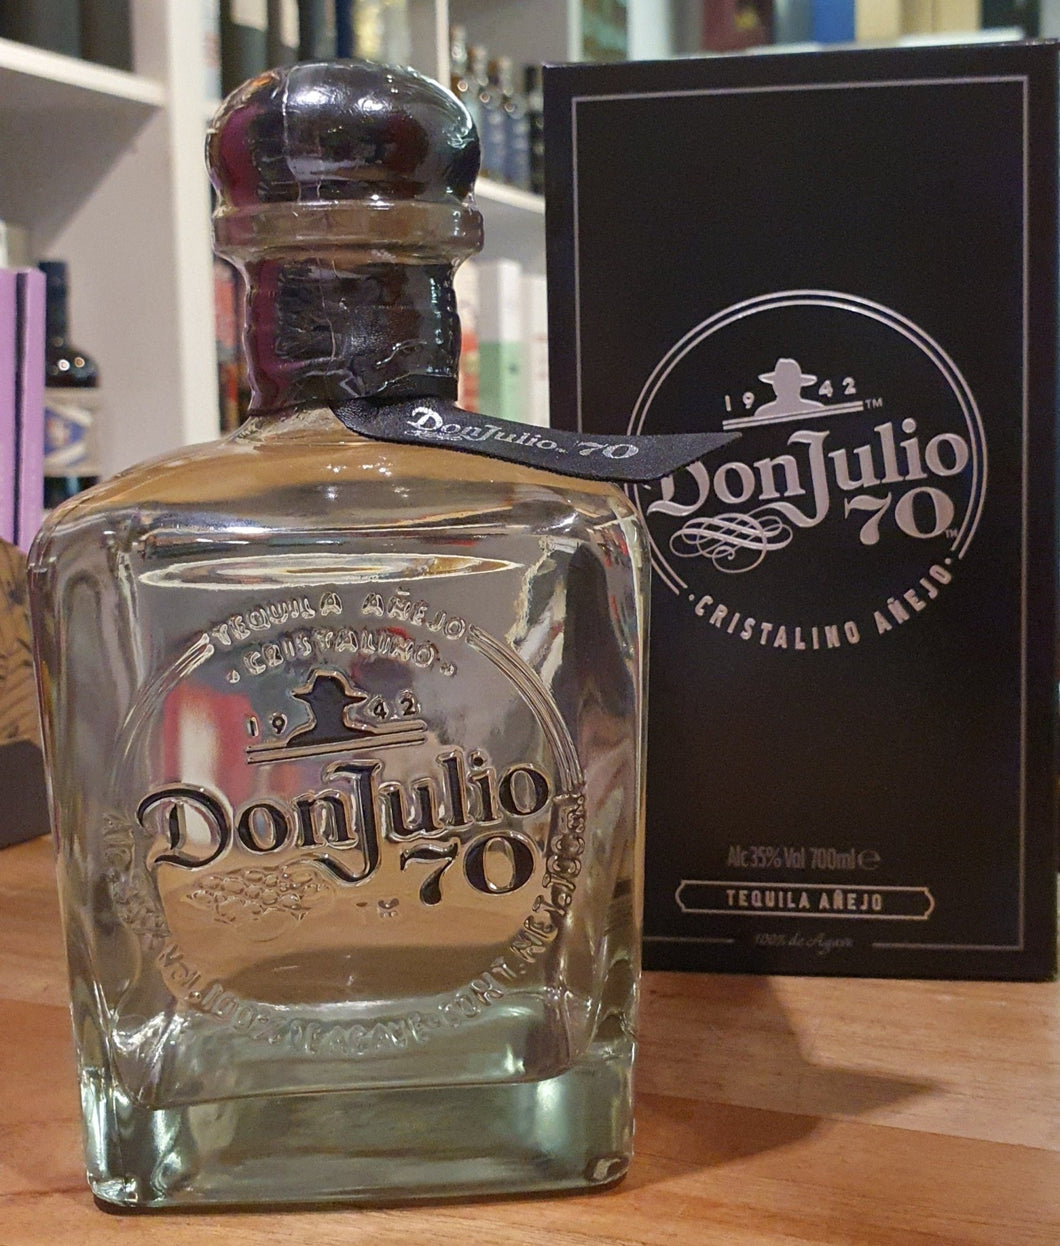 Don Julio 70 Anejo Cristalino Tequila 0,7l 35% vol.